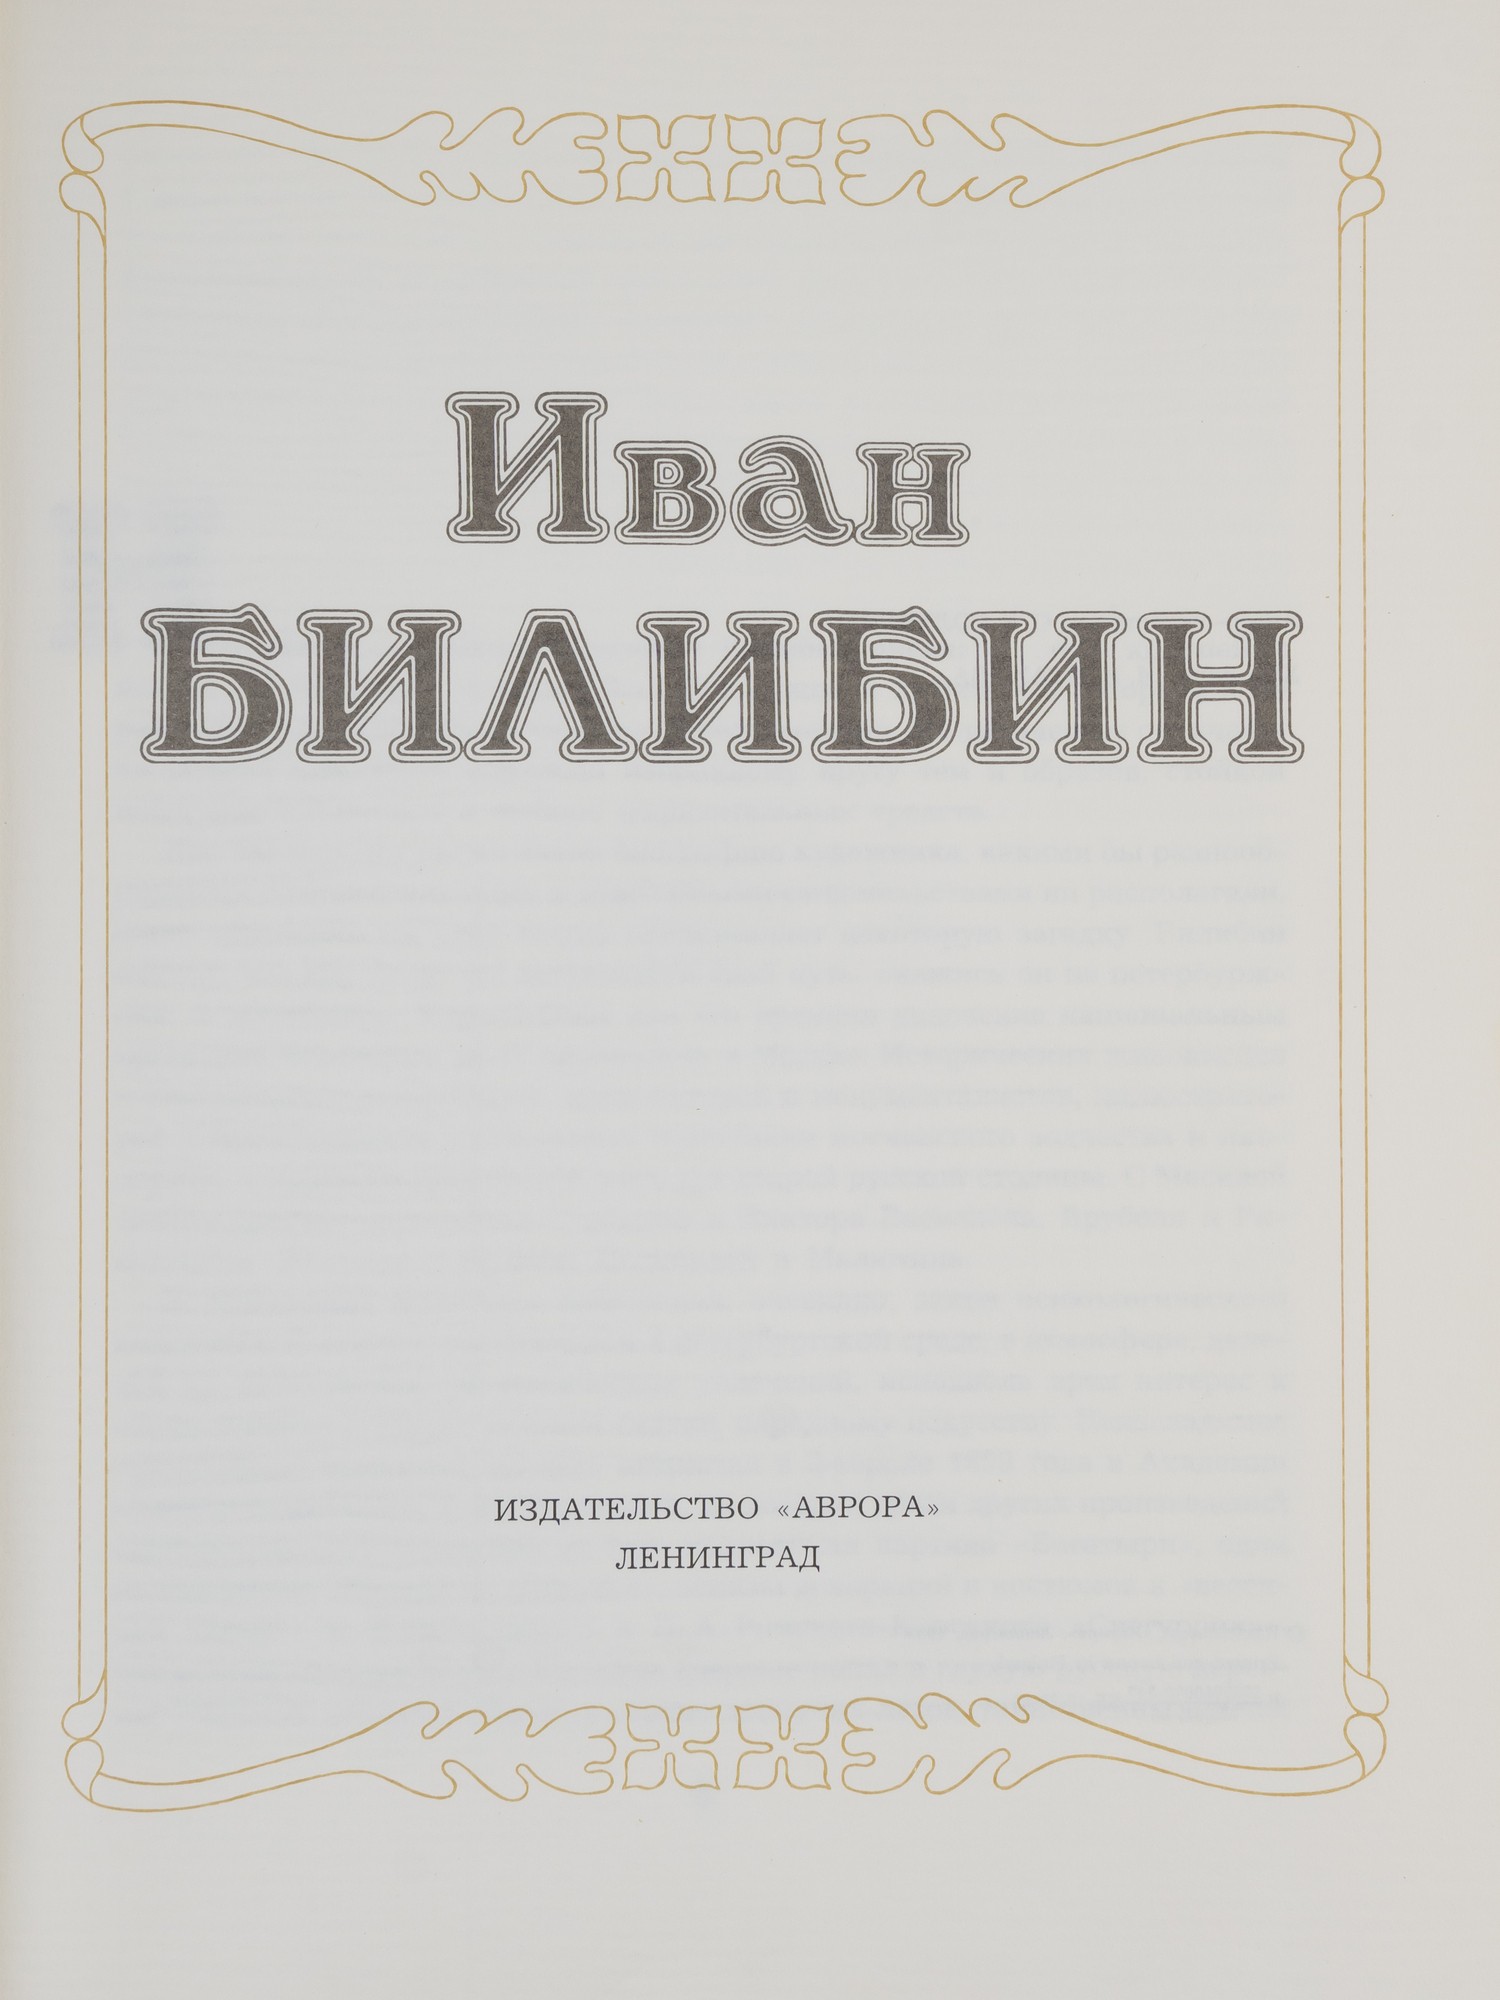 Голынец С.В. Иван Билибин (Л., 1988).